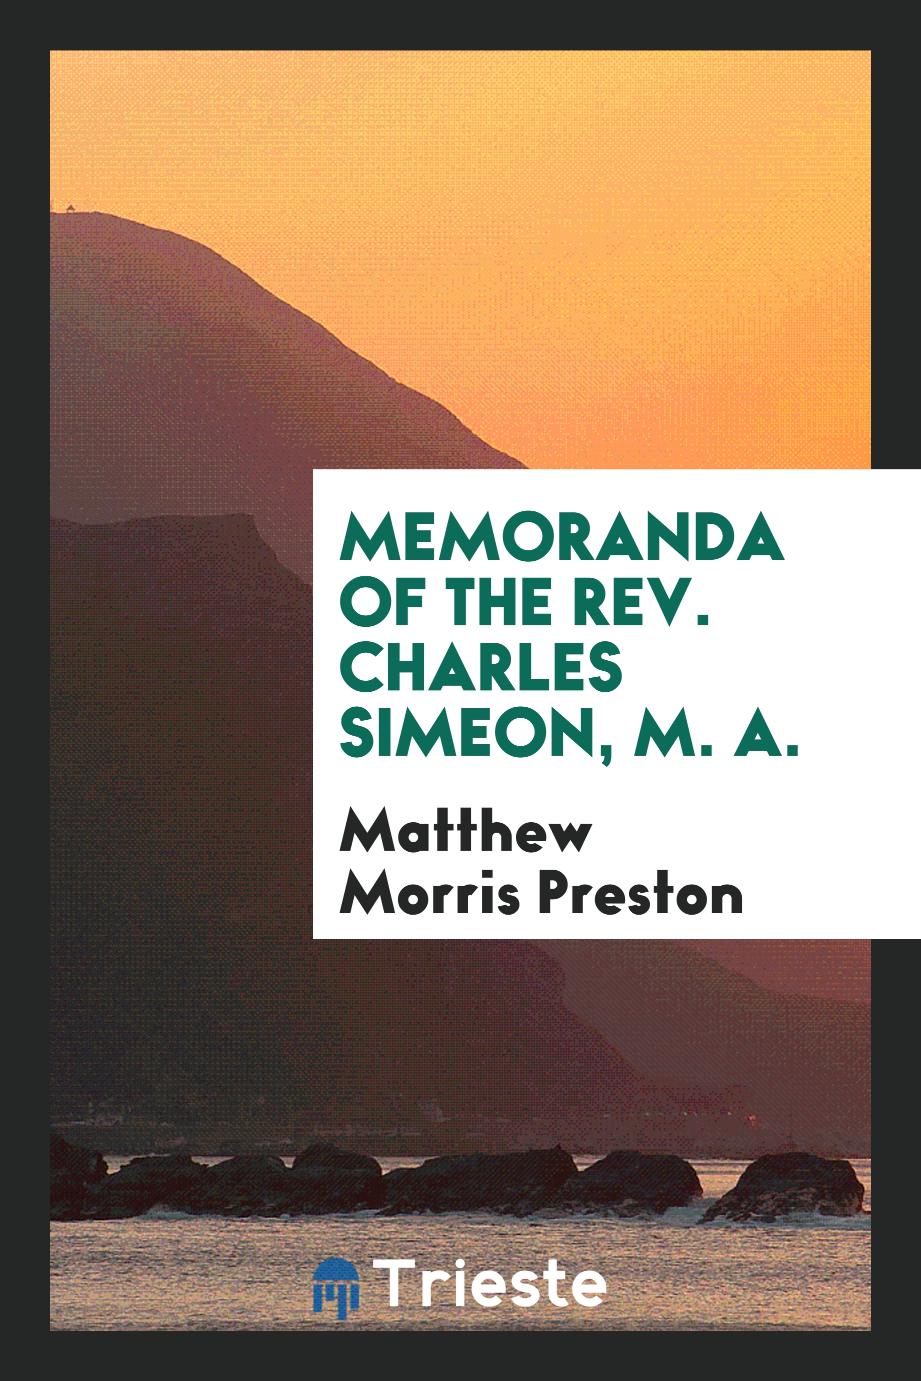 Memoranda of the Rev. Charles Simeon, M. A.